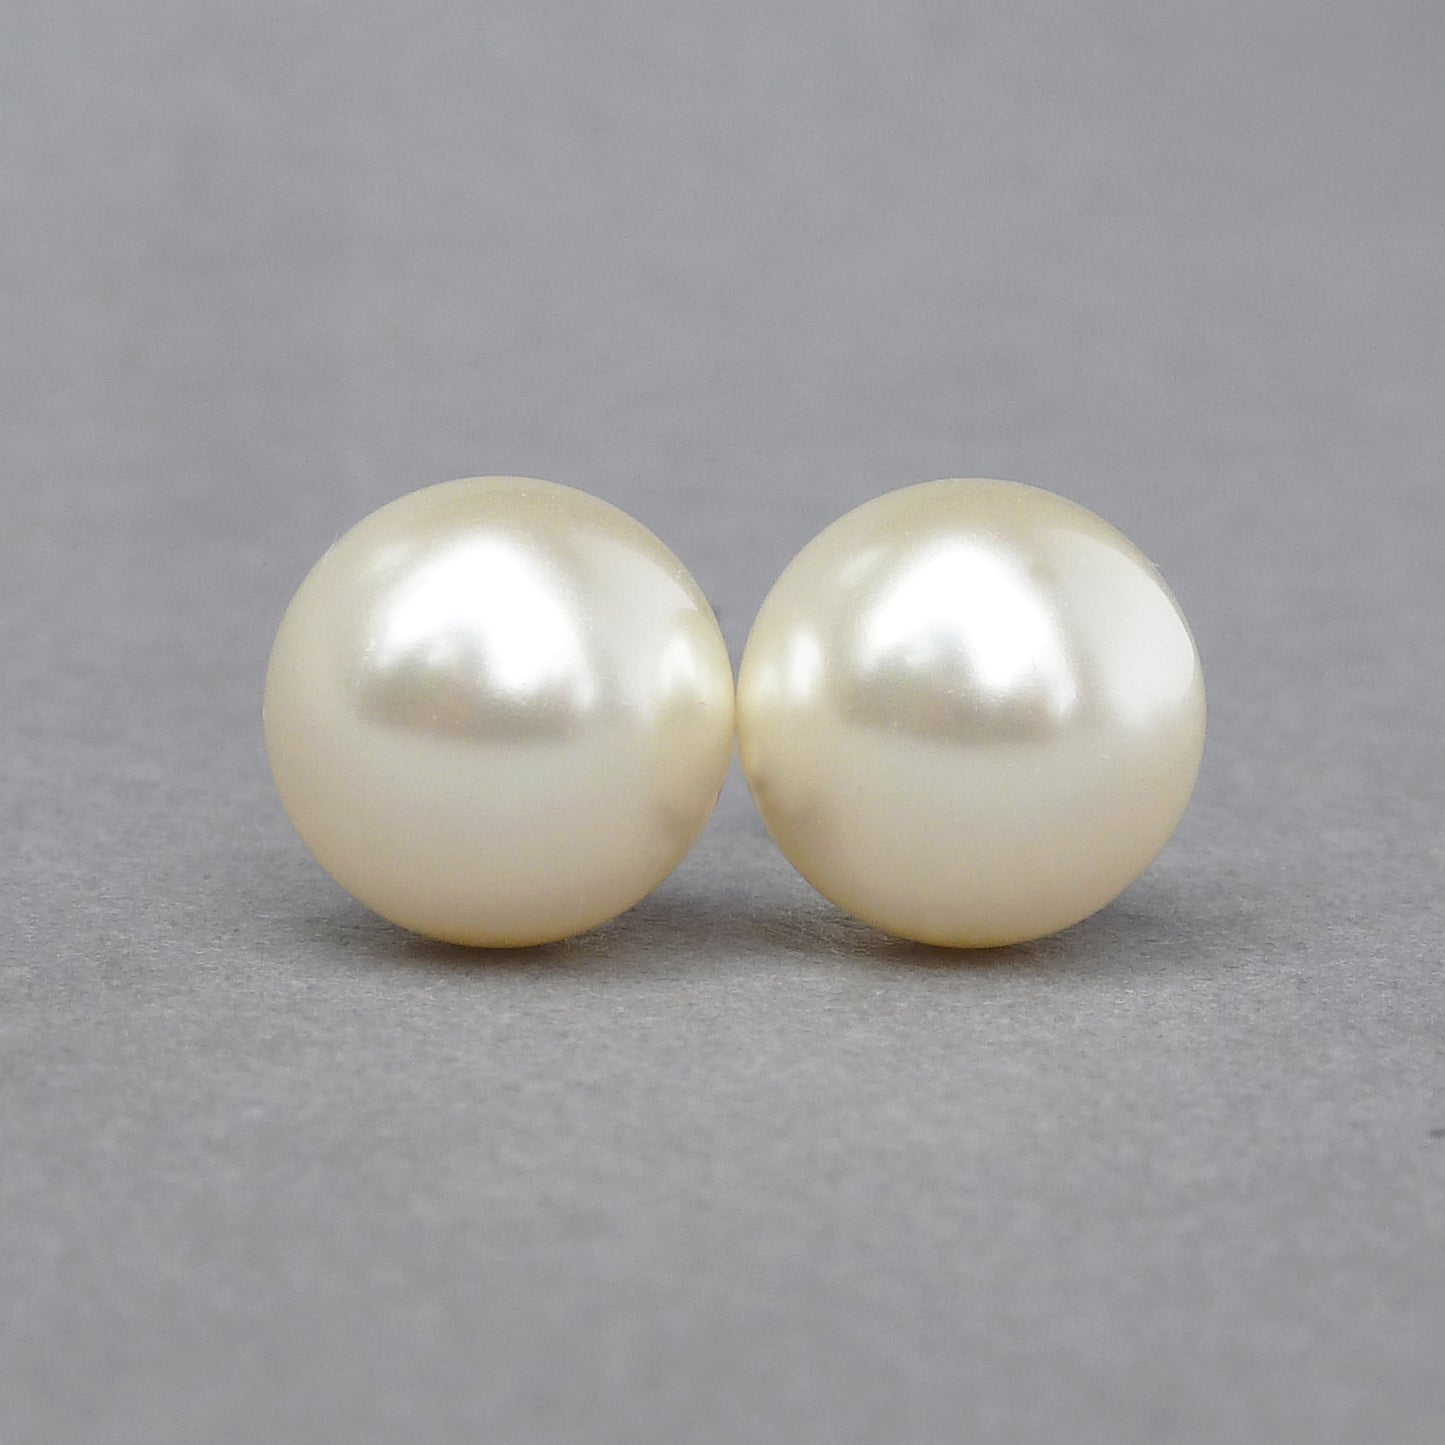 12mm cream pearl stud earrings